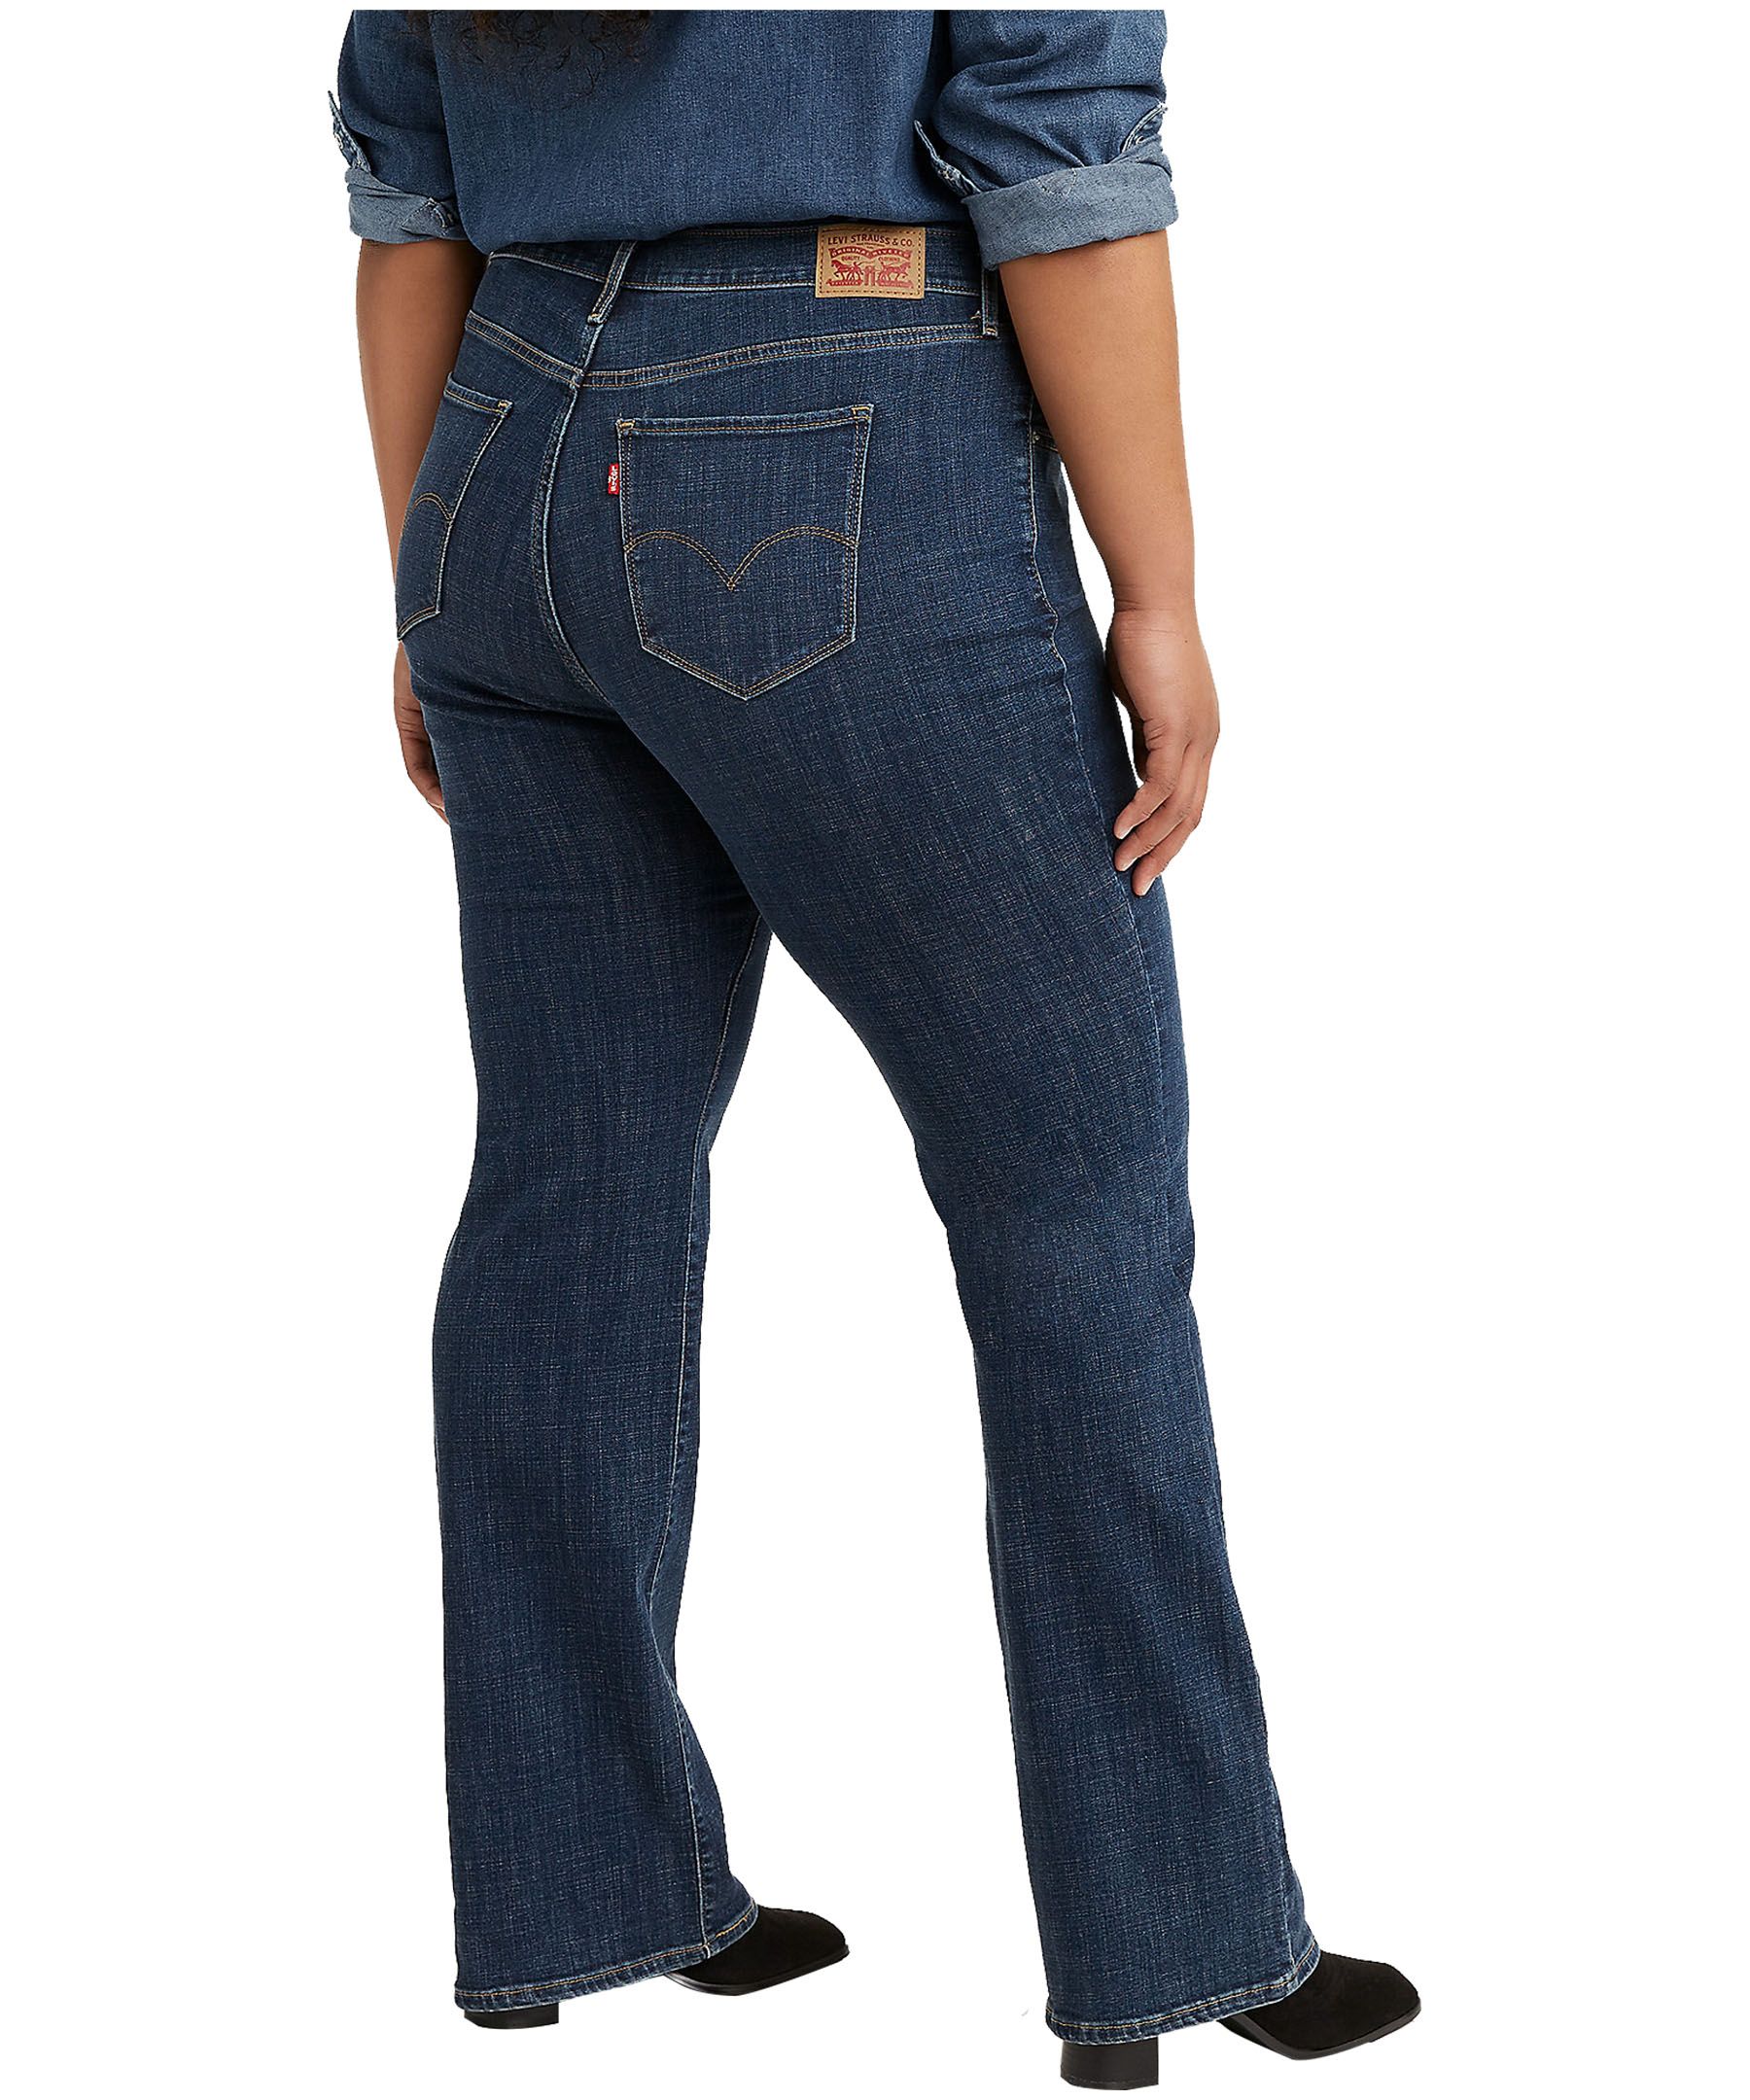 Shop Women's Plus Size Levi's Jeans